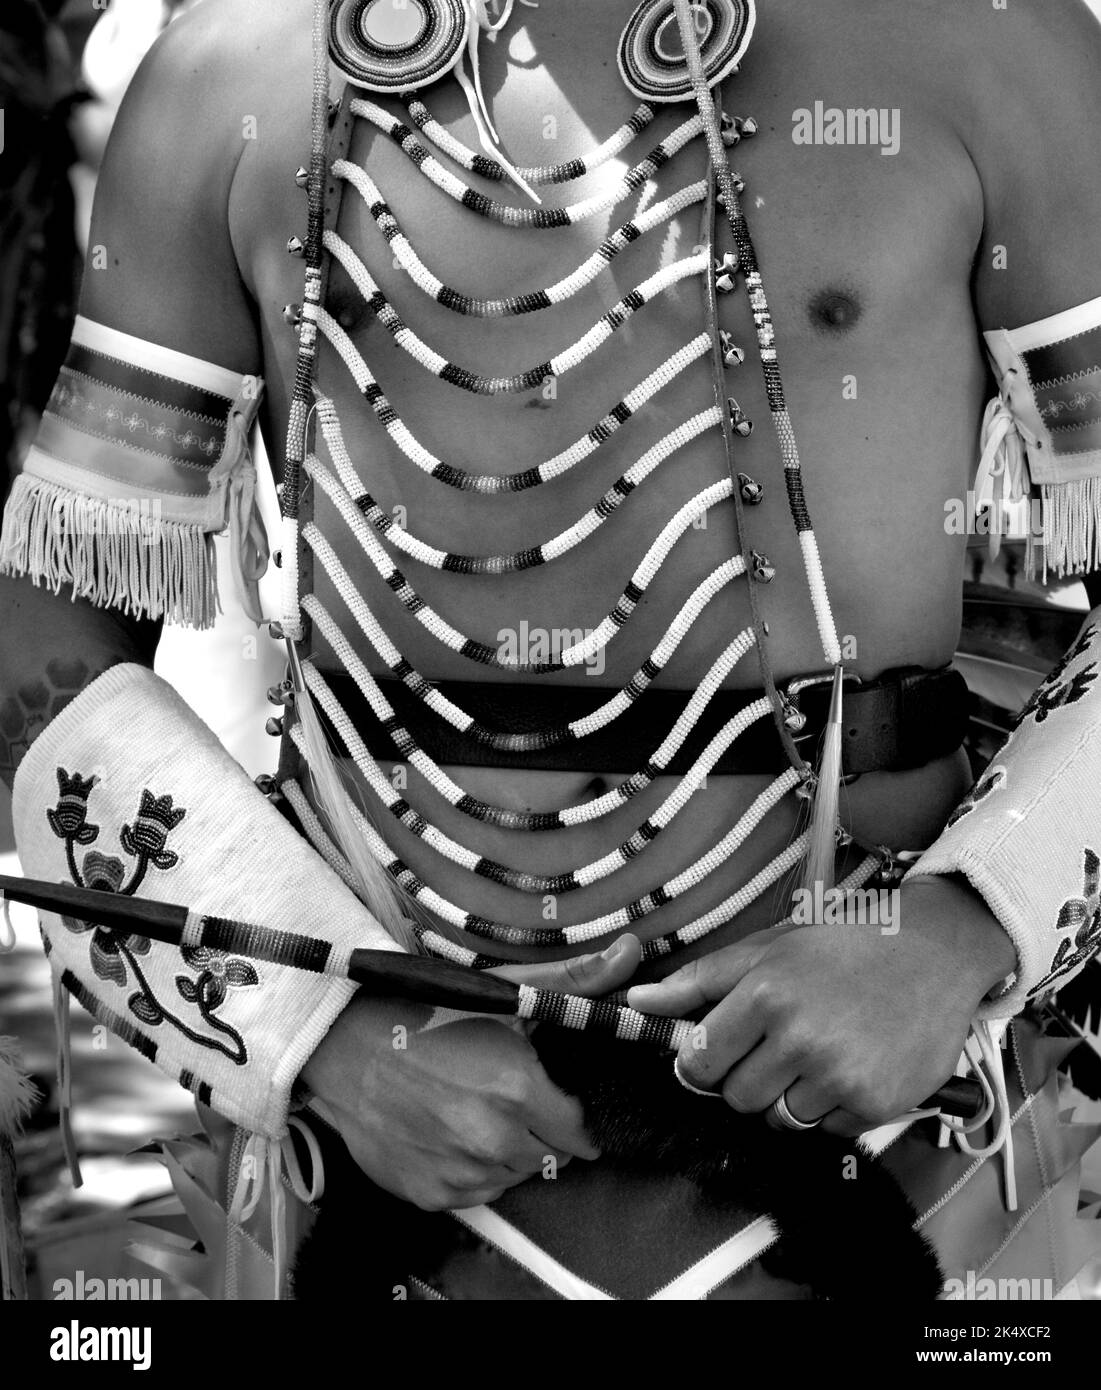 Un homme amérindien participe au concours de vêtements amérindiens au marché indien de Santa Fe, au Nouveau-Mexique. (Voir informations supplémentaires) Banque D'Images